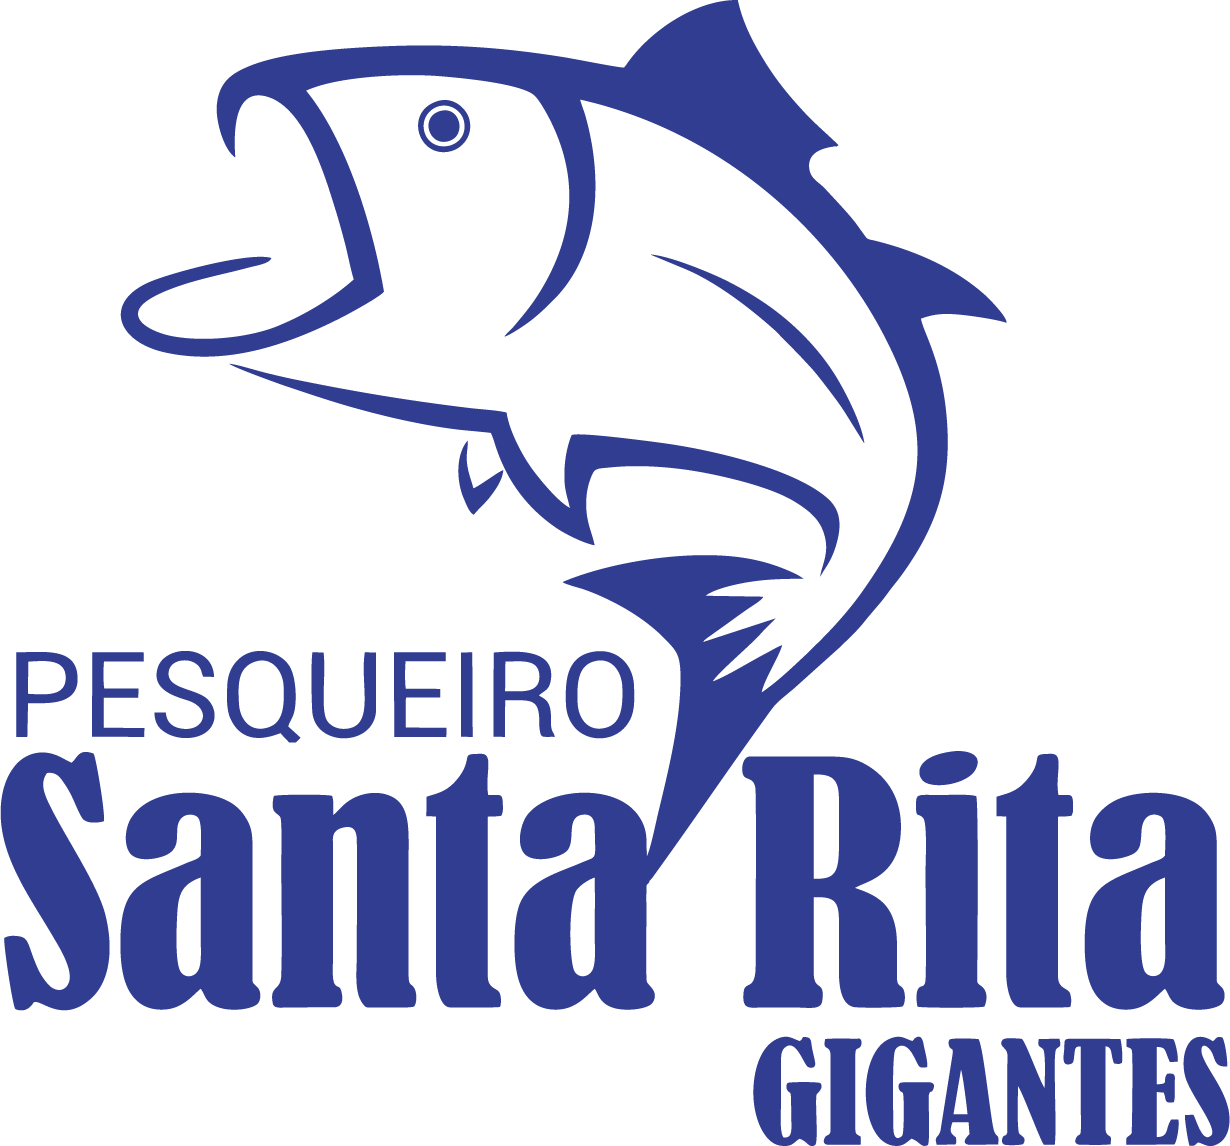 Pesqueiro Santa Rita Gigantes